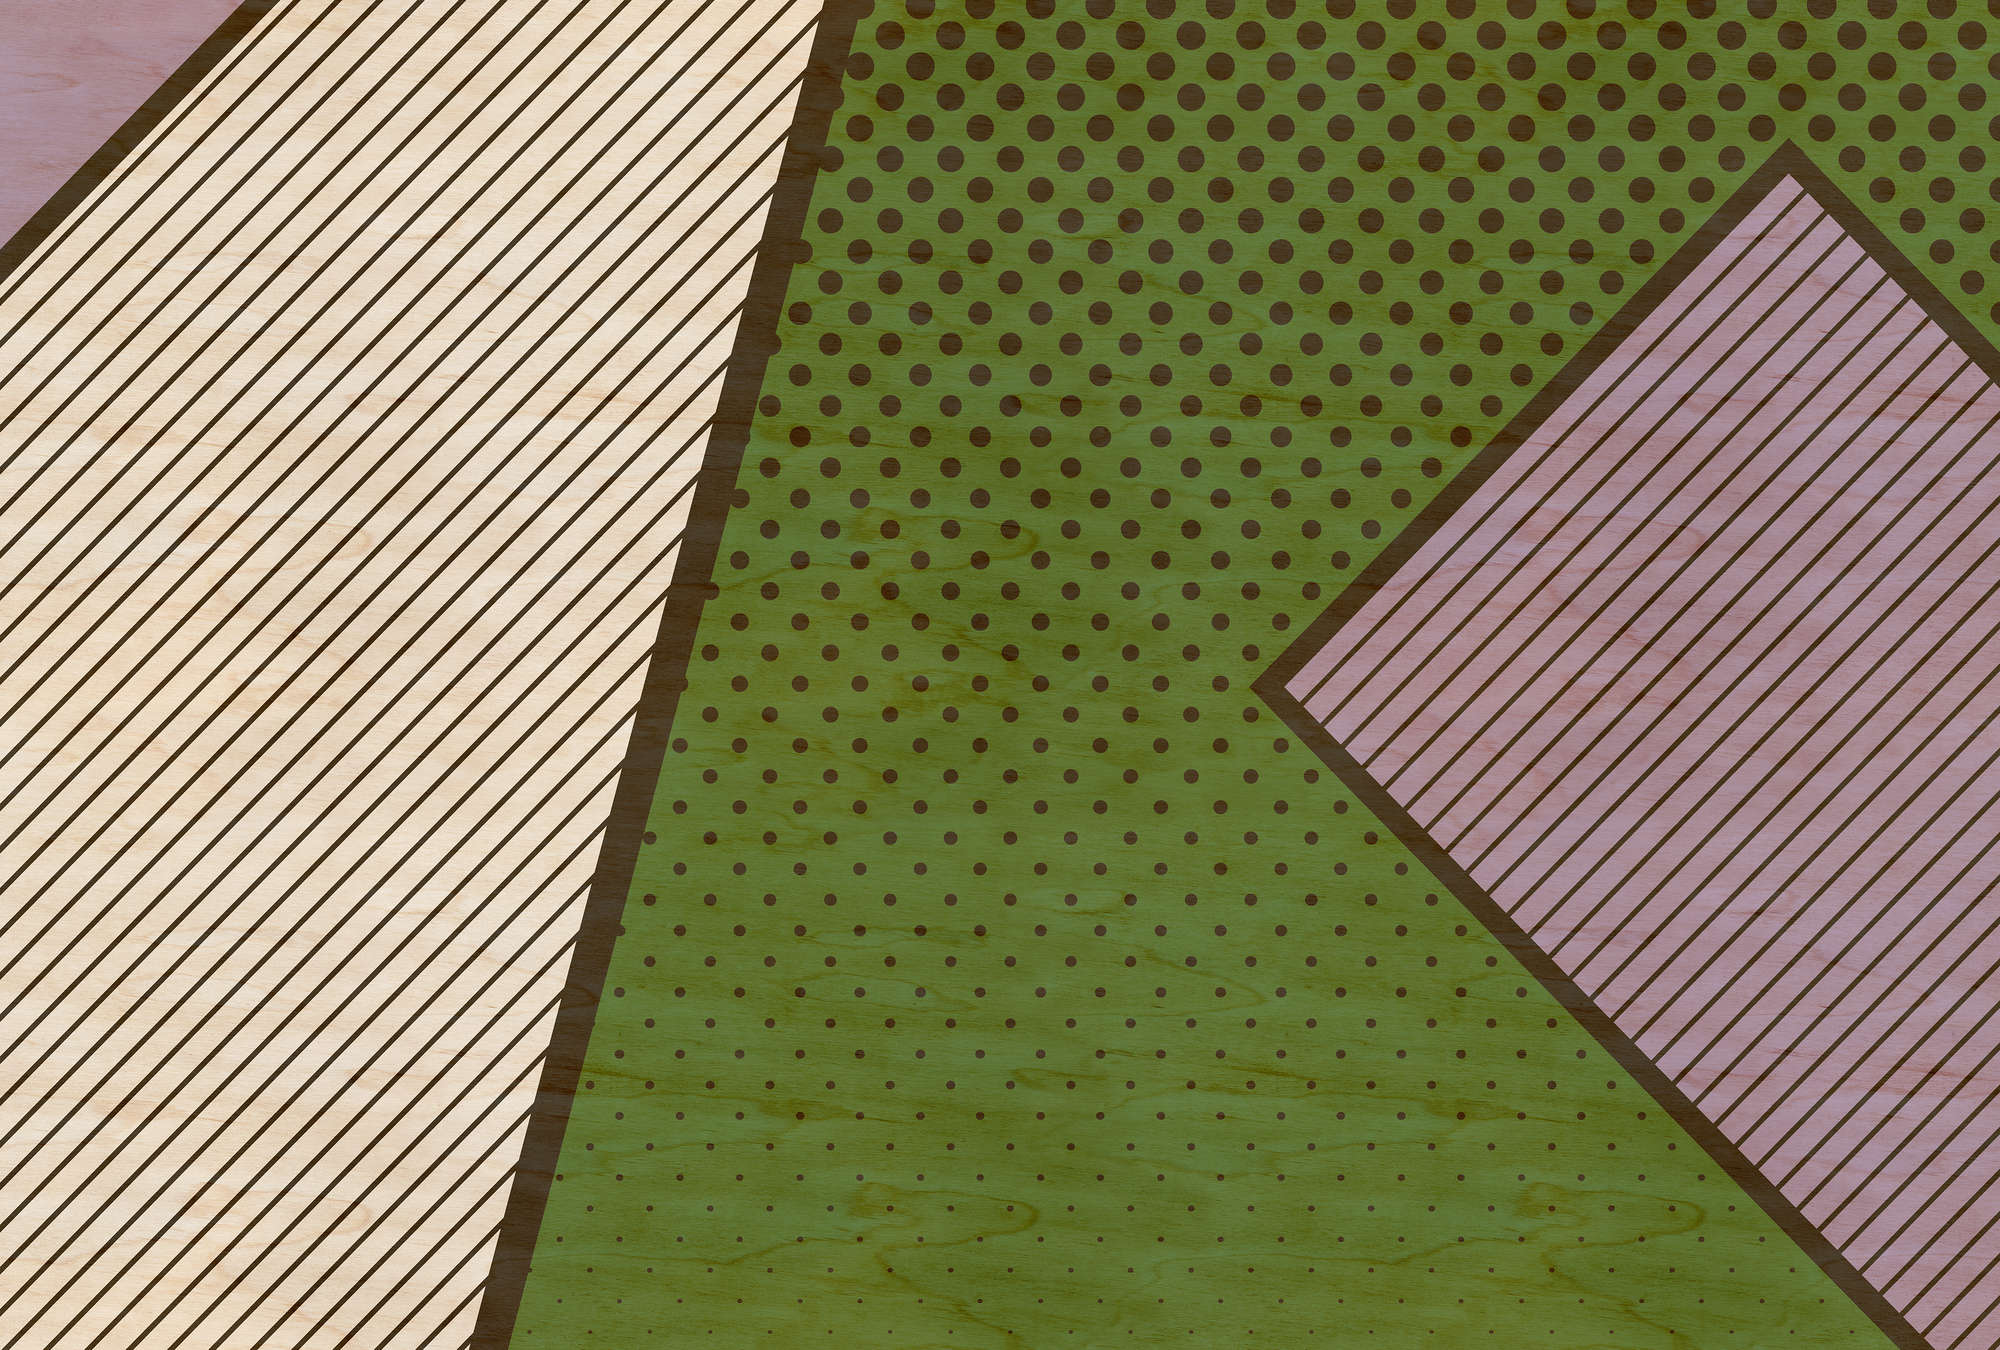             Bird gang 3 - Abstrakte Fototapete in Sperrholz Struktur mit bunte Farbflächen – Beige, Grün | Perlmutt Glattvlies
        